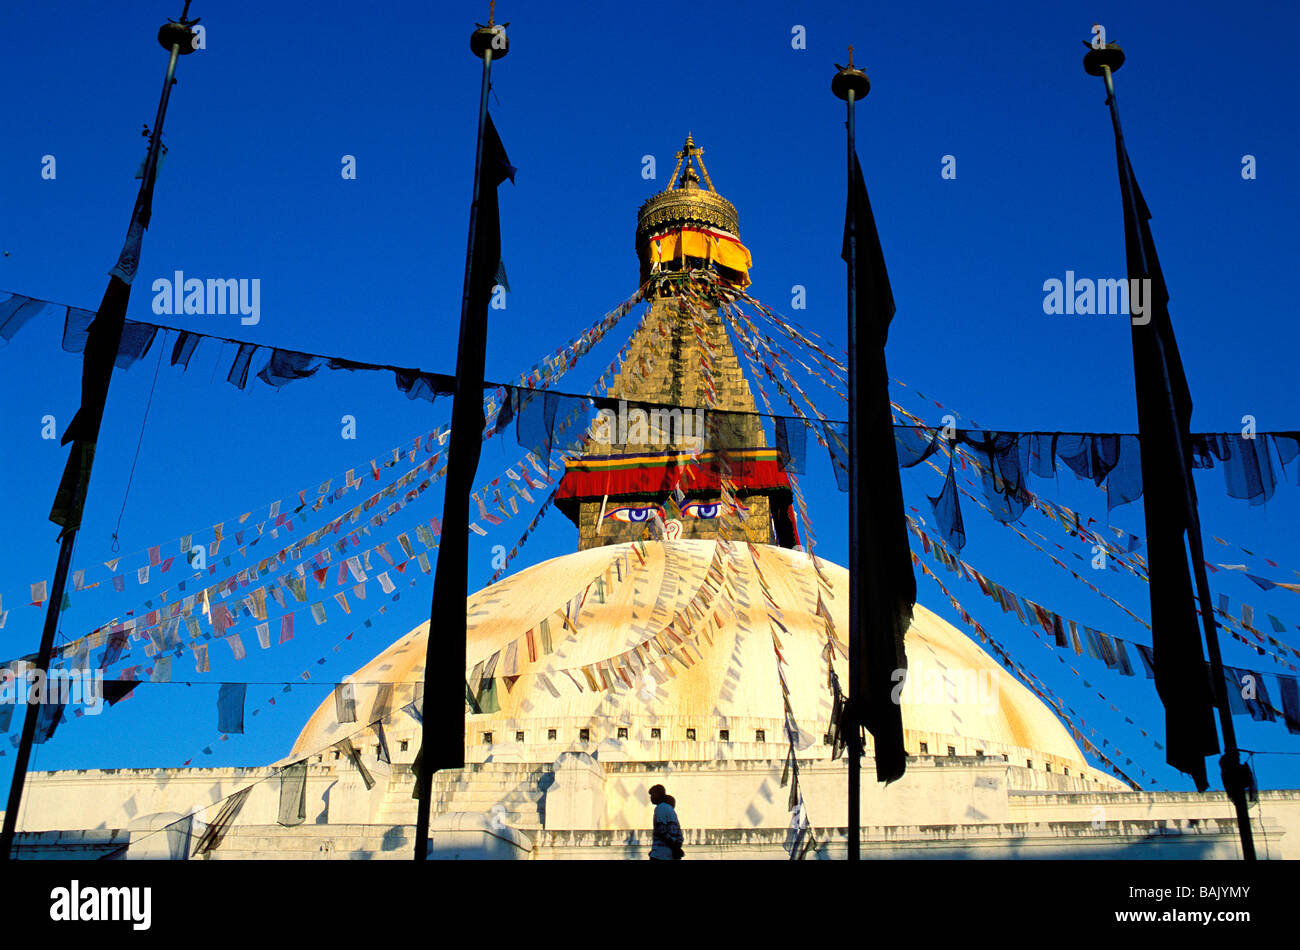 Au Népal, la vallée de Katmandou classée au Patrimoine Mondial de l'UNESCO, Zone Bagmati, Katmandou, District de Bodnath stupa bouddhiste Banque D'Images